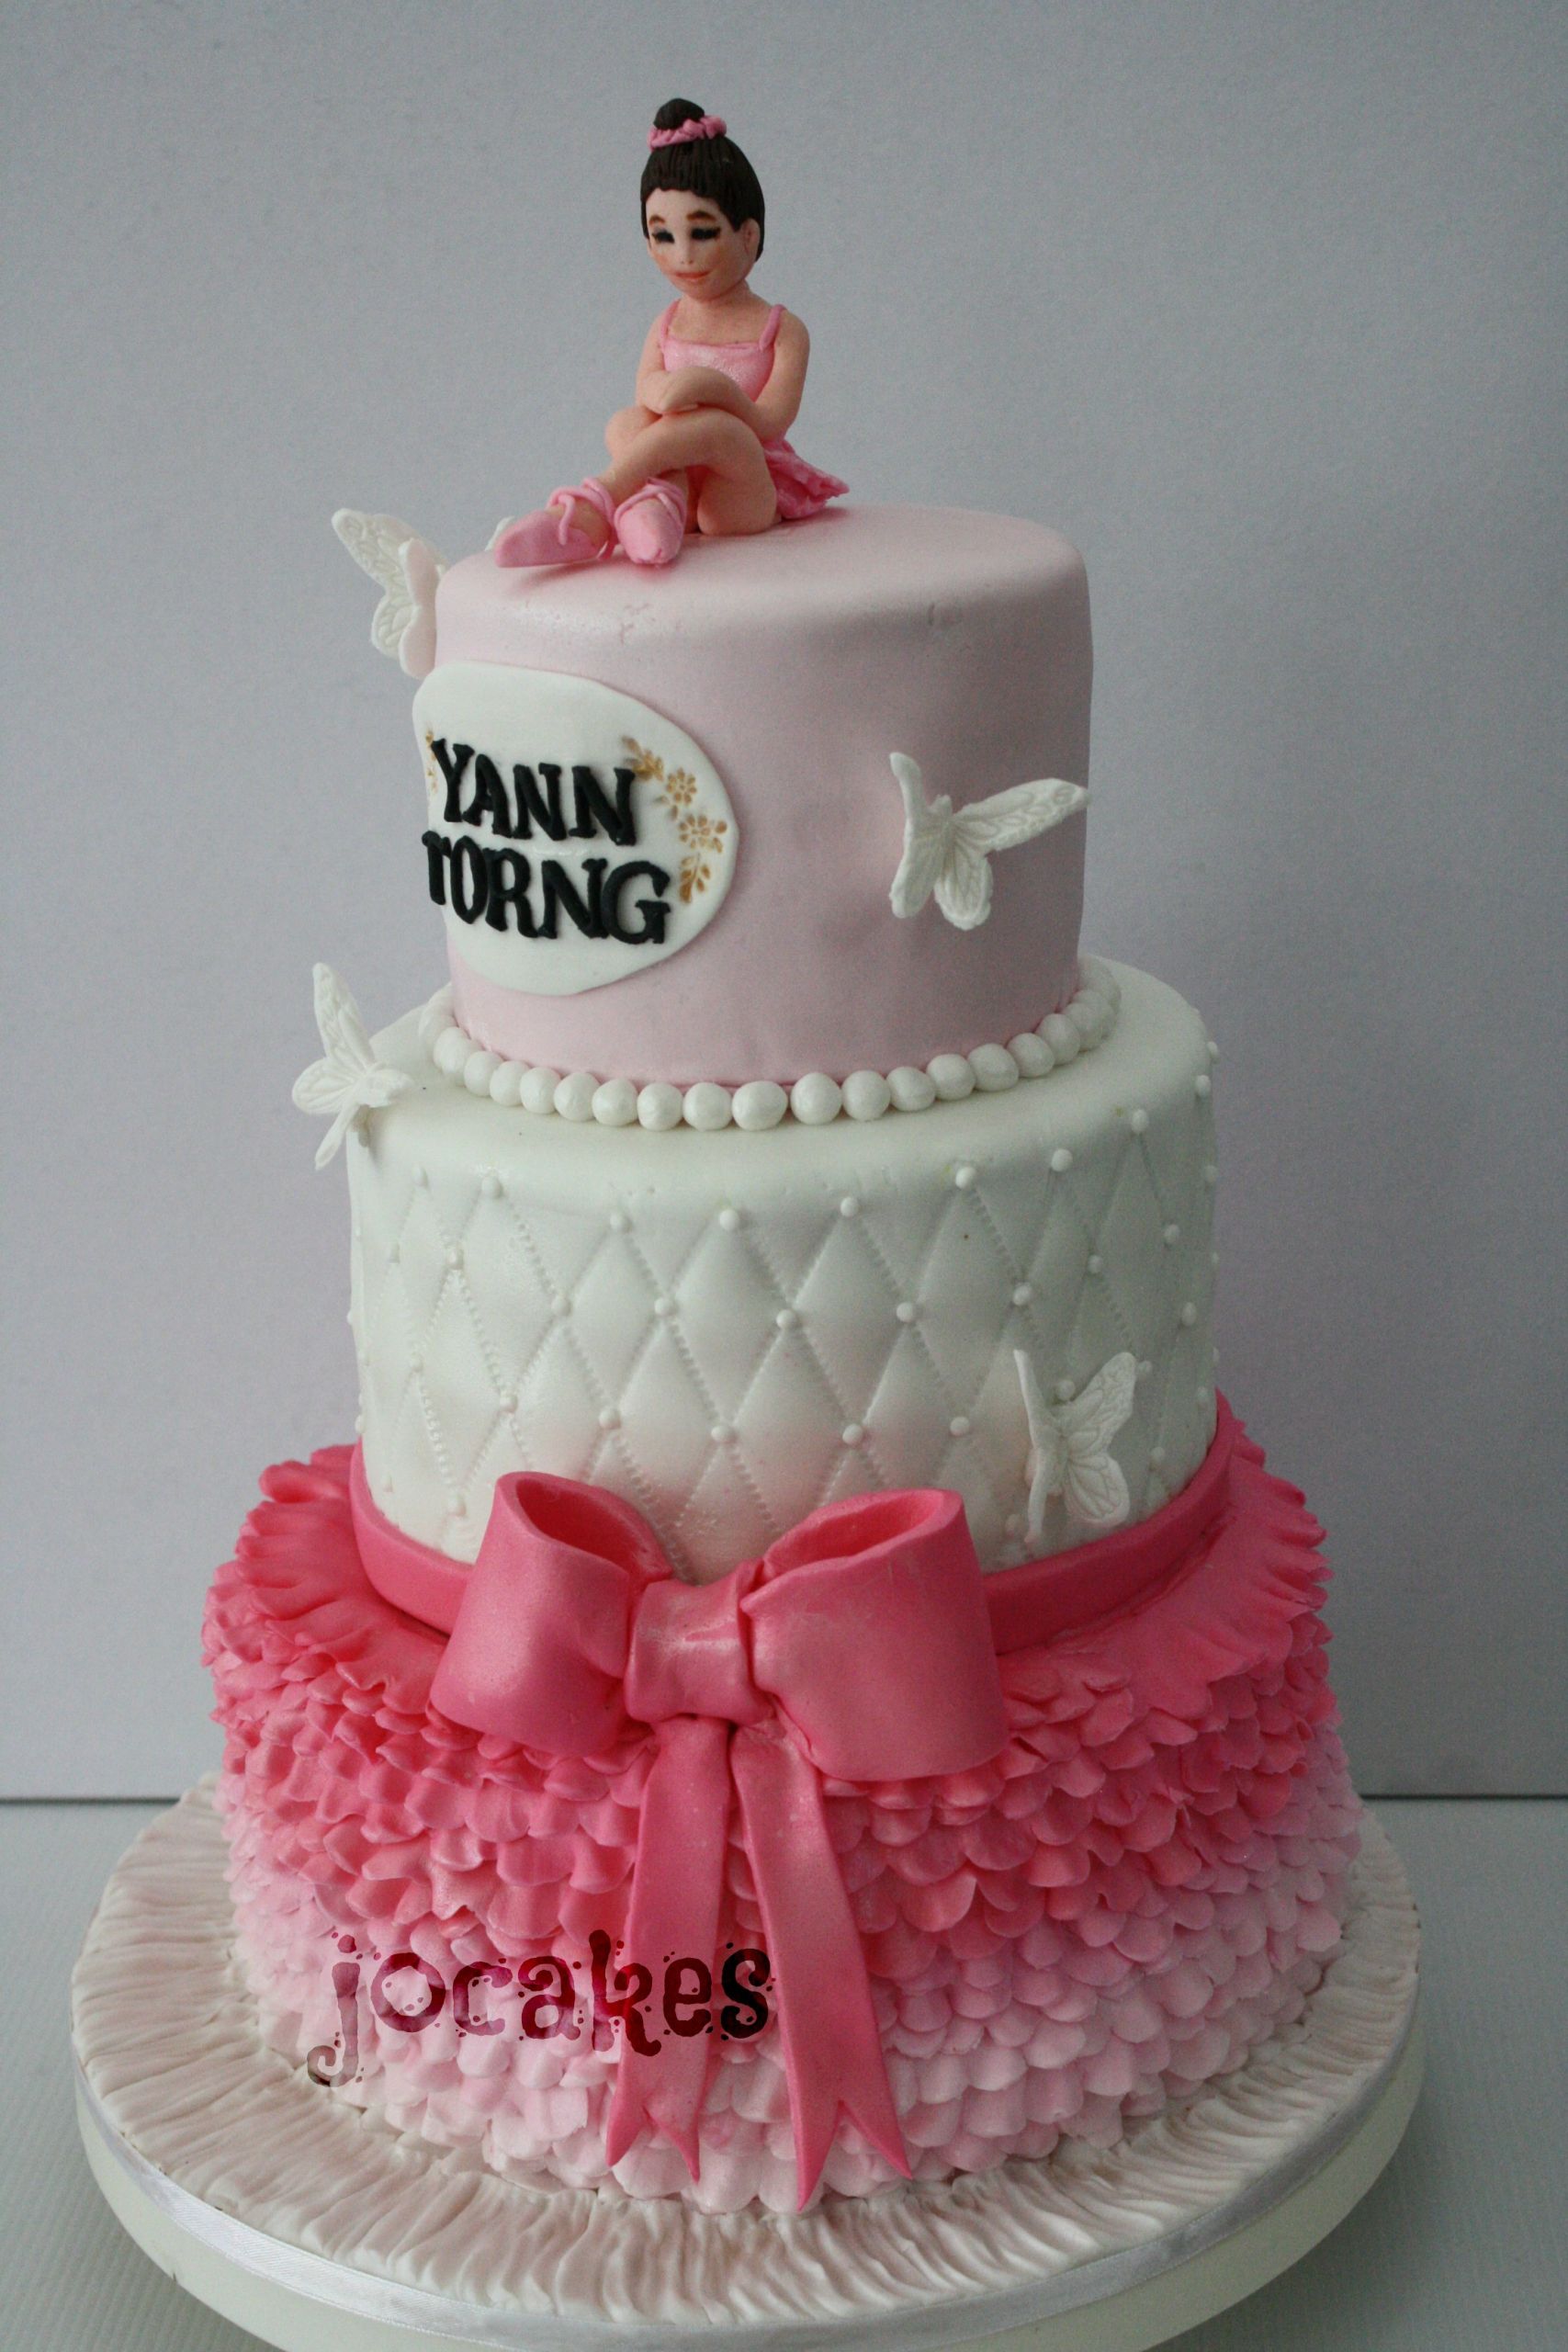 21st Birthday Cakes For Her
 Ballerina cake for Yann Torng 21st birthday